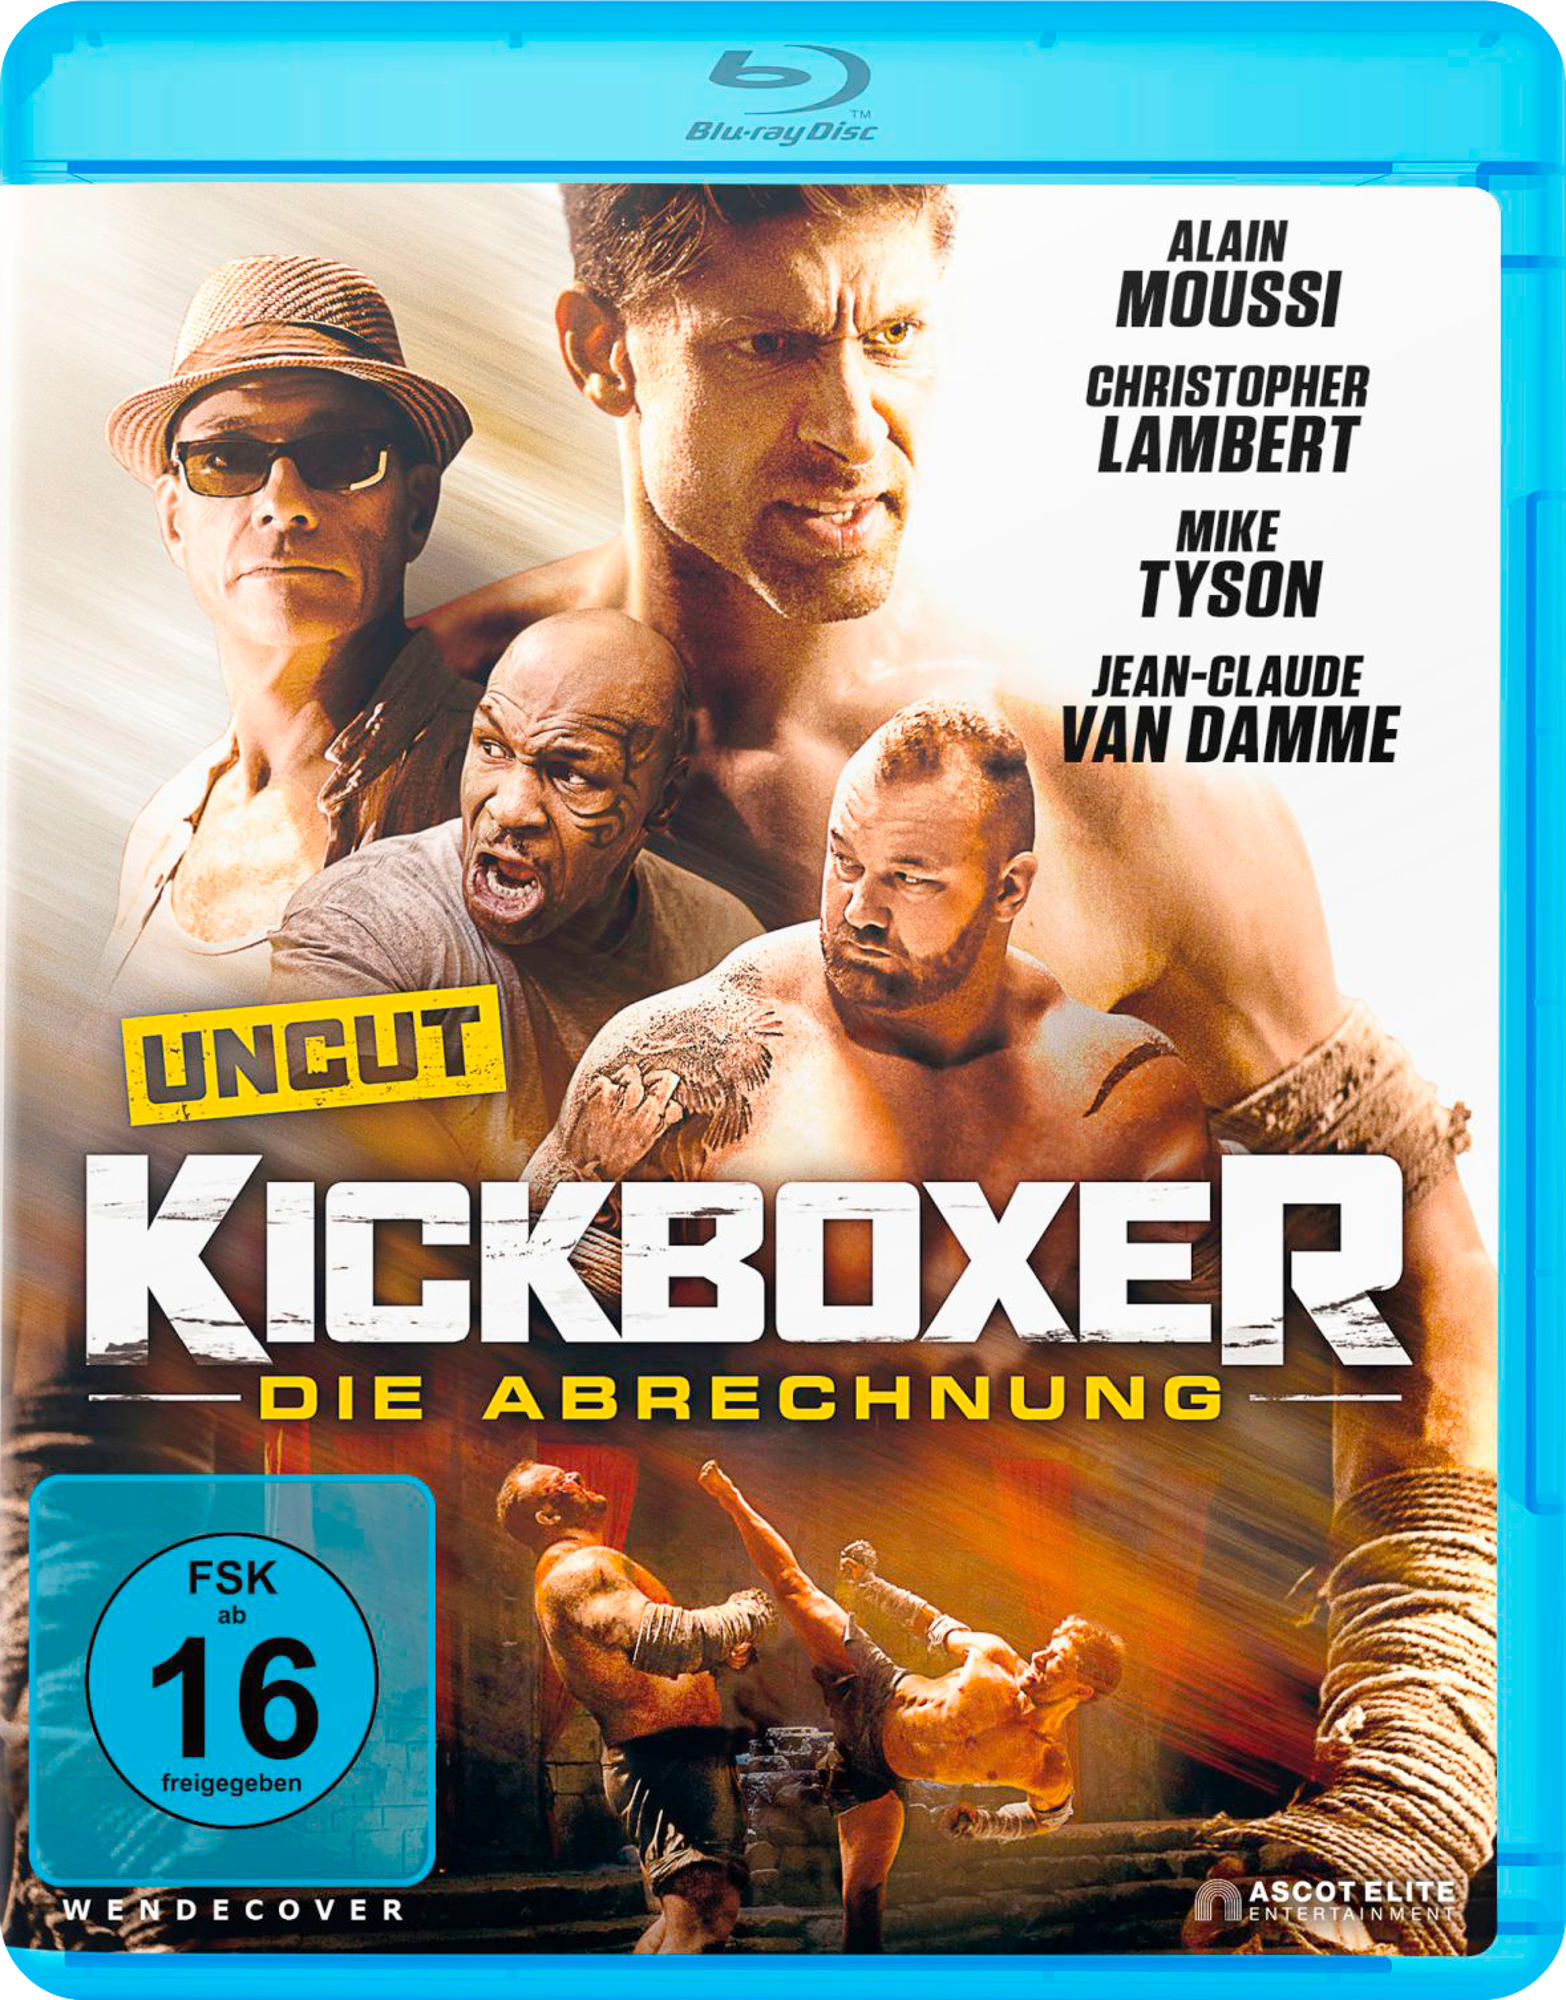 Abrechnung Blu-ray Kickboxer: Die